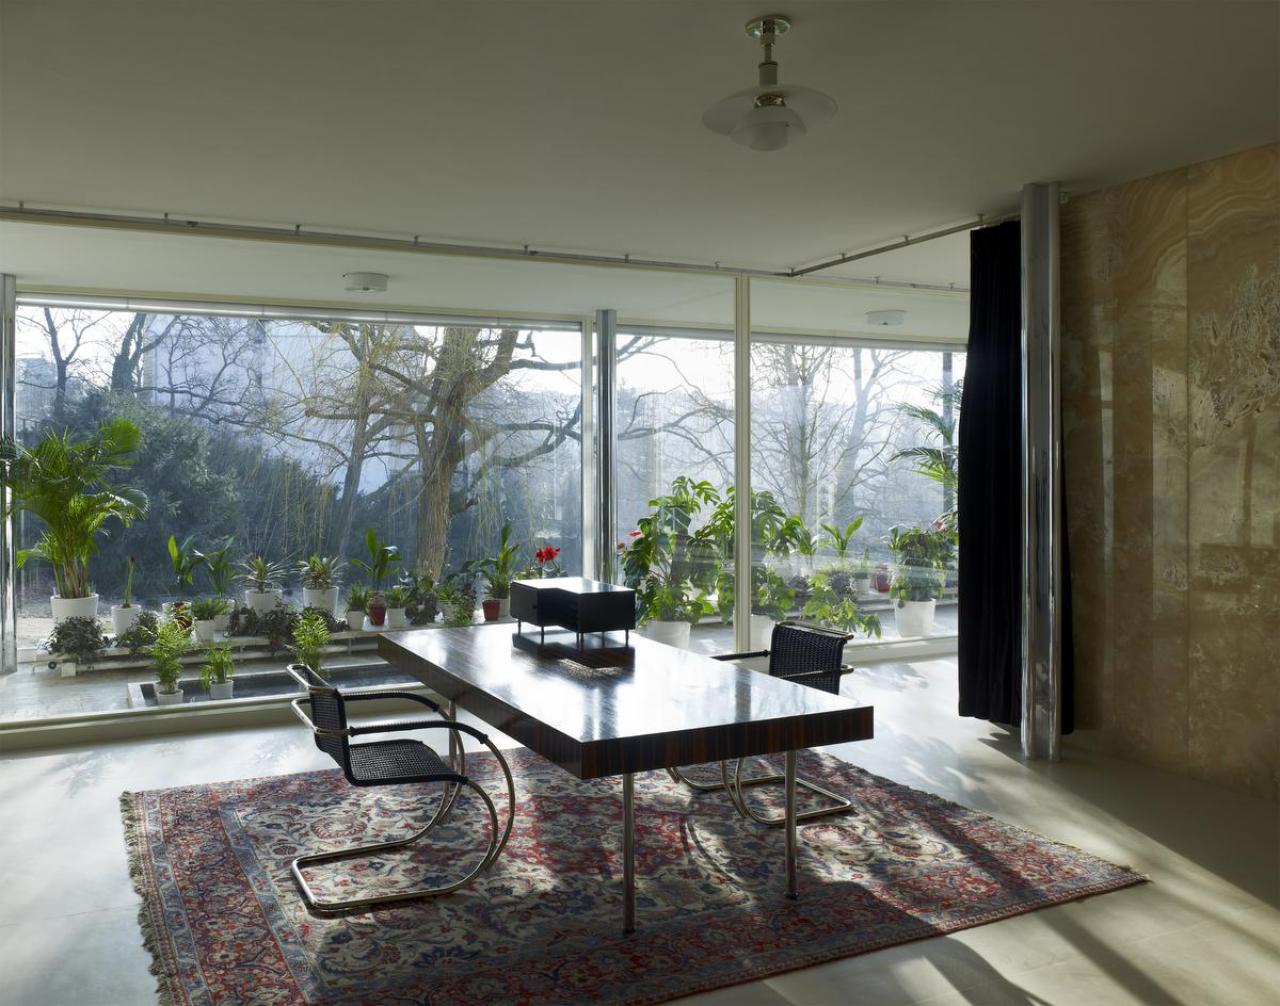 De woonkamer van Villa Tugendhat met zicht op de groene omgeving.